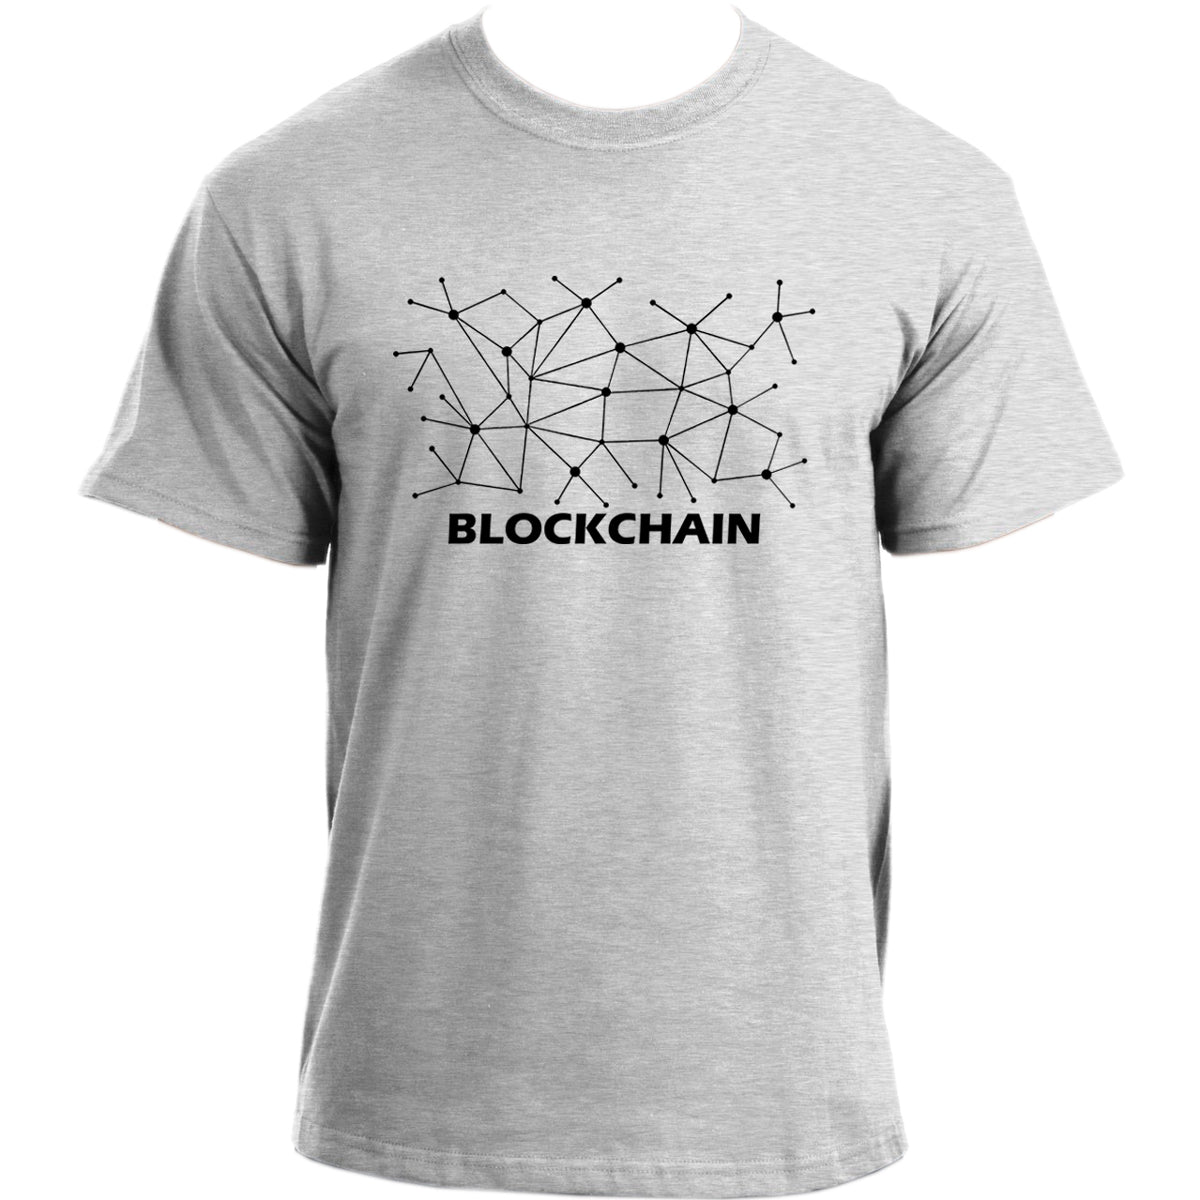 Blockchain Crypto T-Shirt I Crypto Currency T Shirt I Trader Blockchain Tshirt